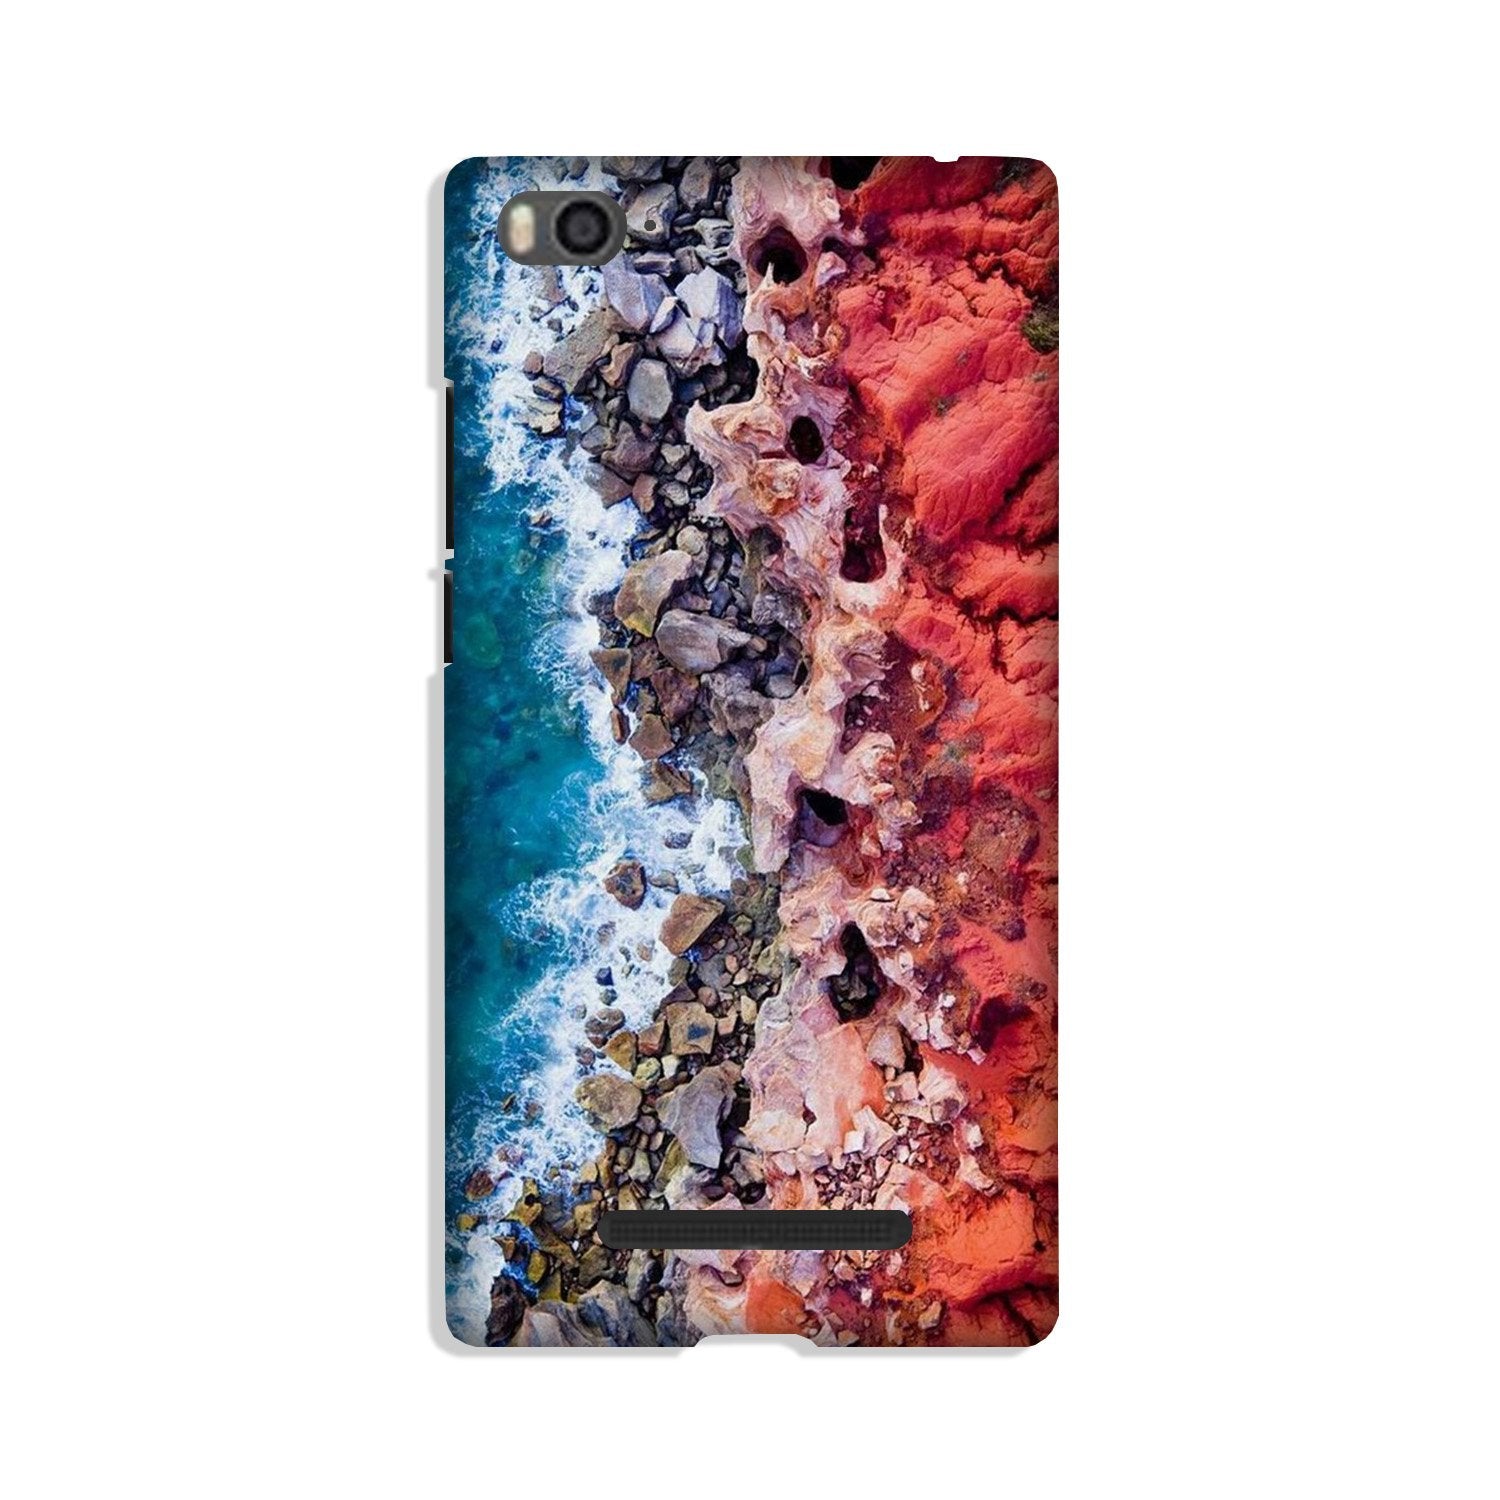 Sea Shore Case for Xiaomi Mi 4i (Design No. 273)